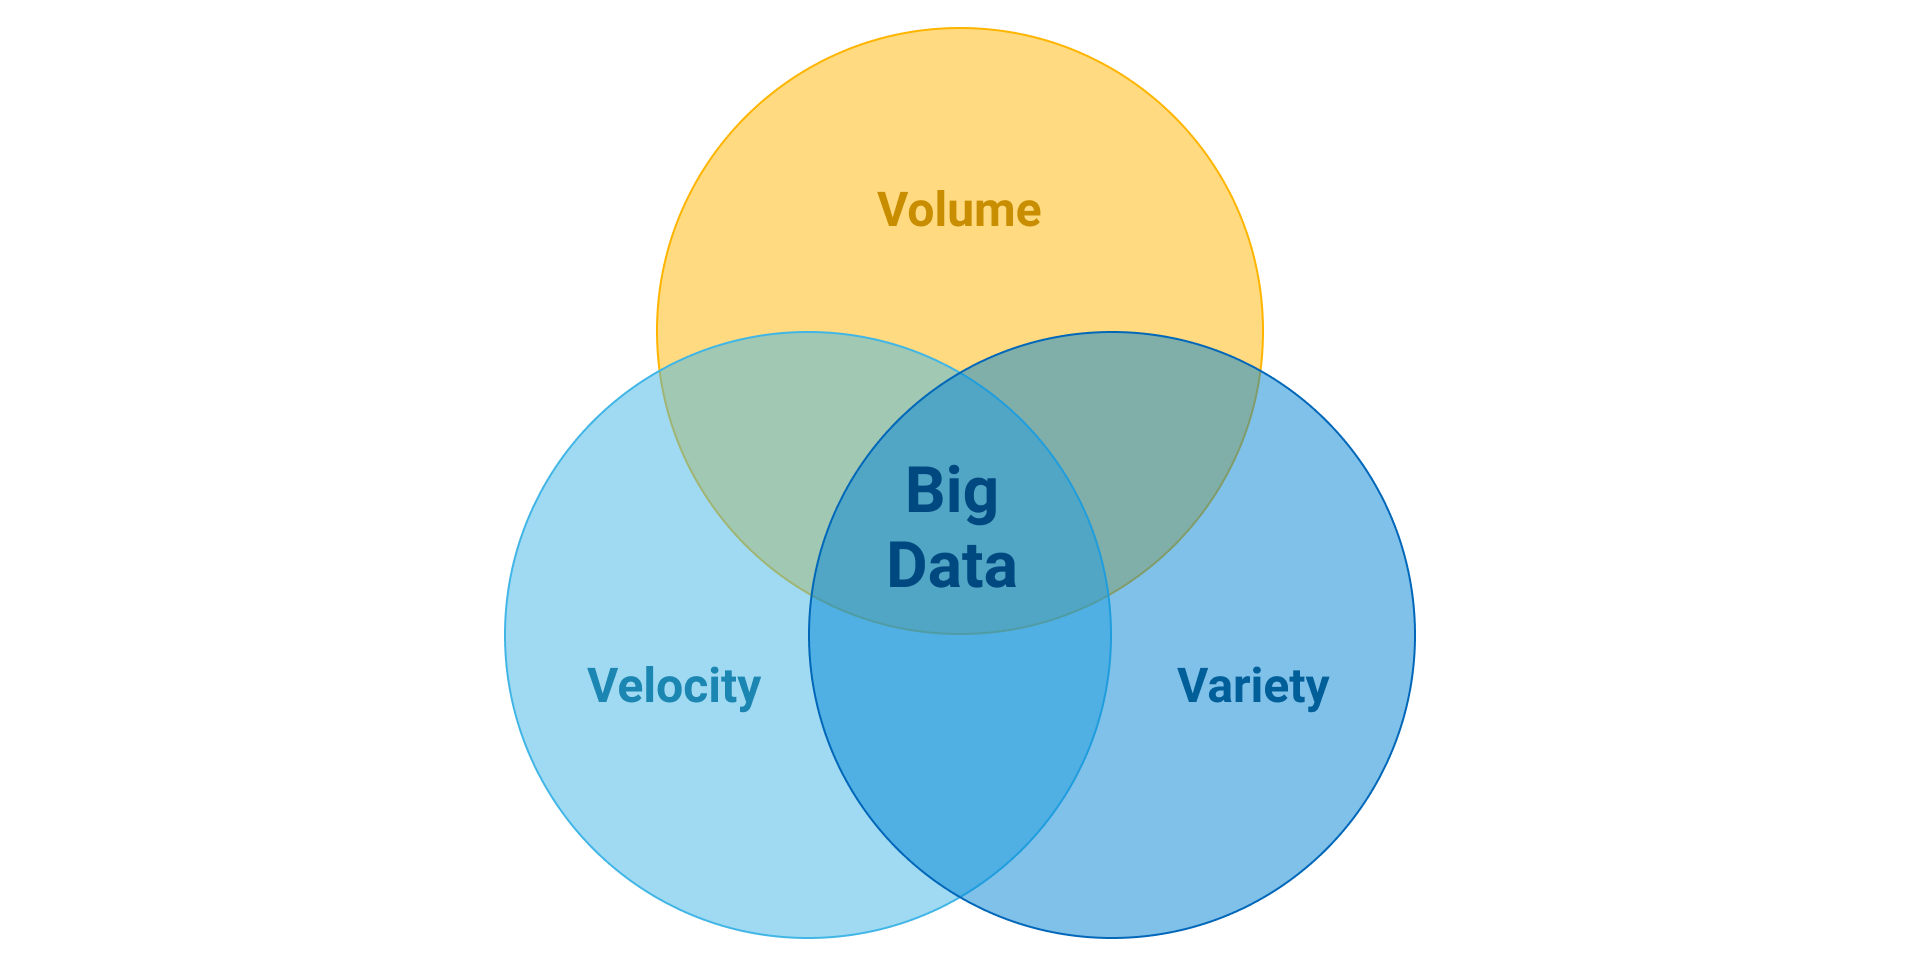 Франшиза bigdata otzyvy review co franshiza bigdata. 3v big data. Big data страховая компания графики. Flowers big data.